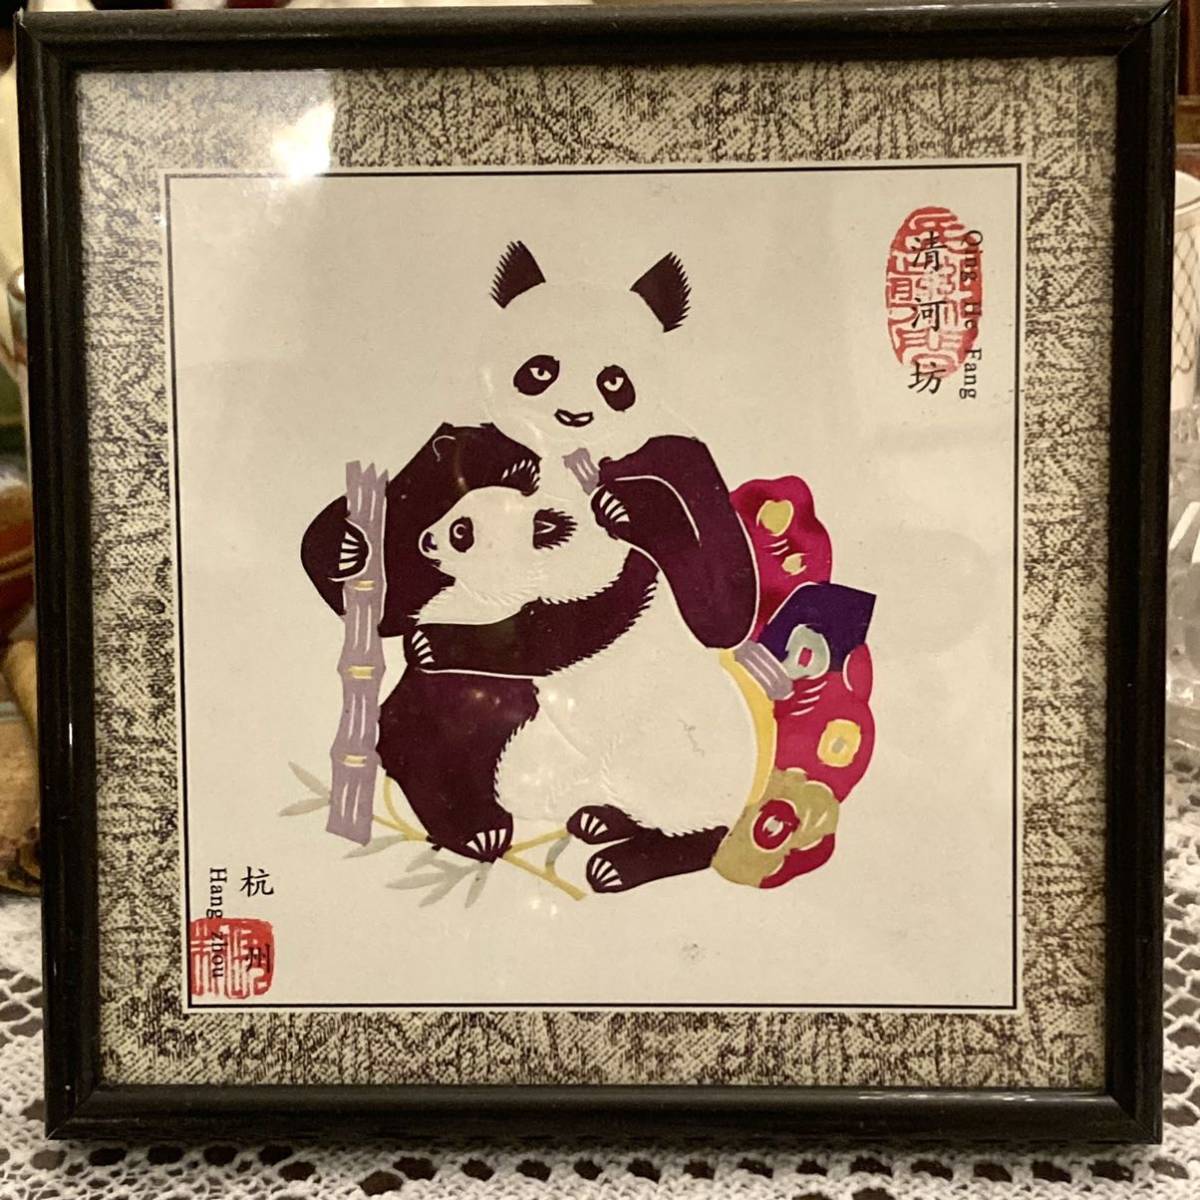 全新未使用的熊猫中国中国剪纸微型绘画手工工艺带框物品 C, 艺术品, 绘画, 比江, 基里